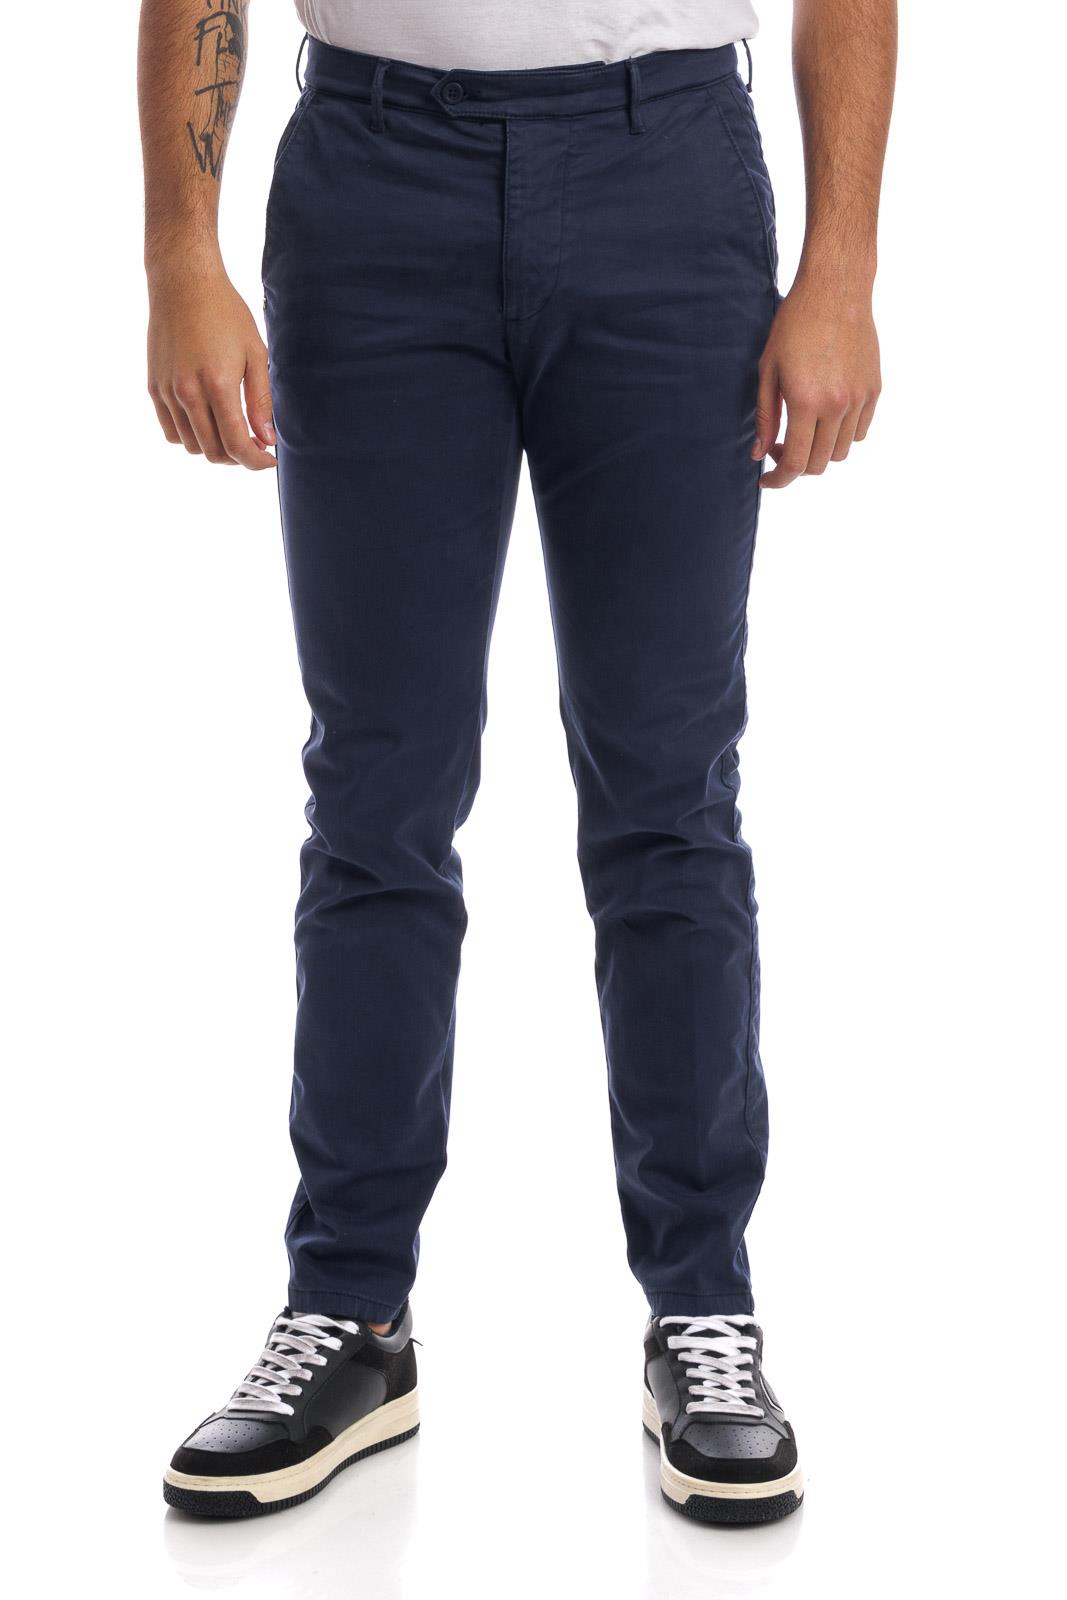 Pantaloni tasca america in cotone elasticizzato SUPERSLIM - blu- ZERO/CONSTRUCTION